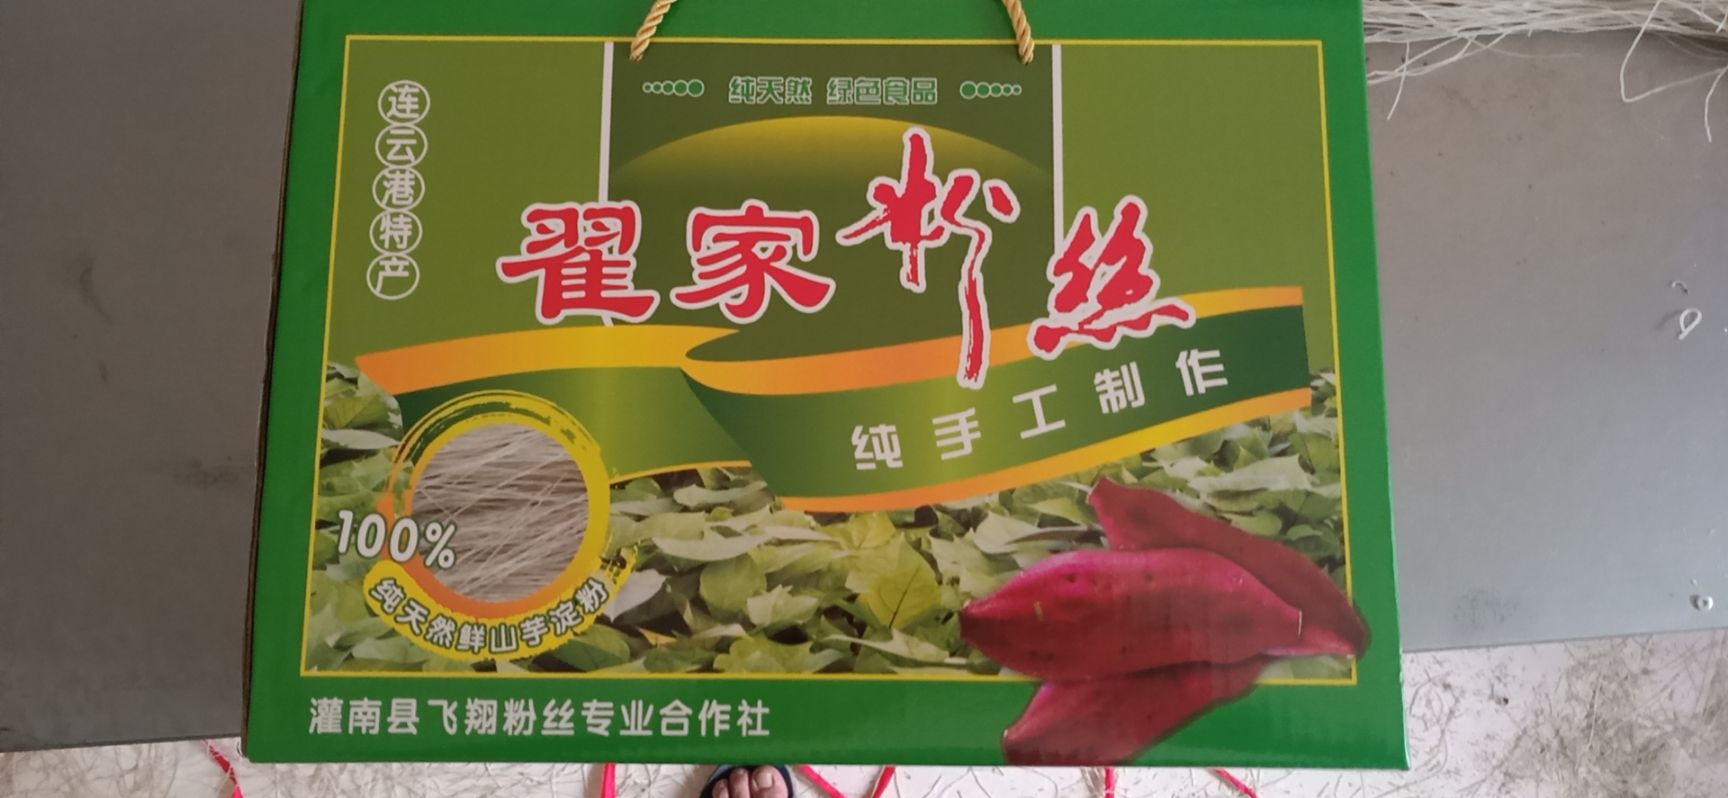 灌南县 纯手工纯红薯健康粉丝。可以免费试吃。可全国快递。批发零售